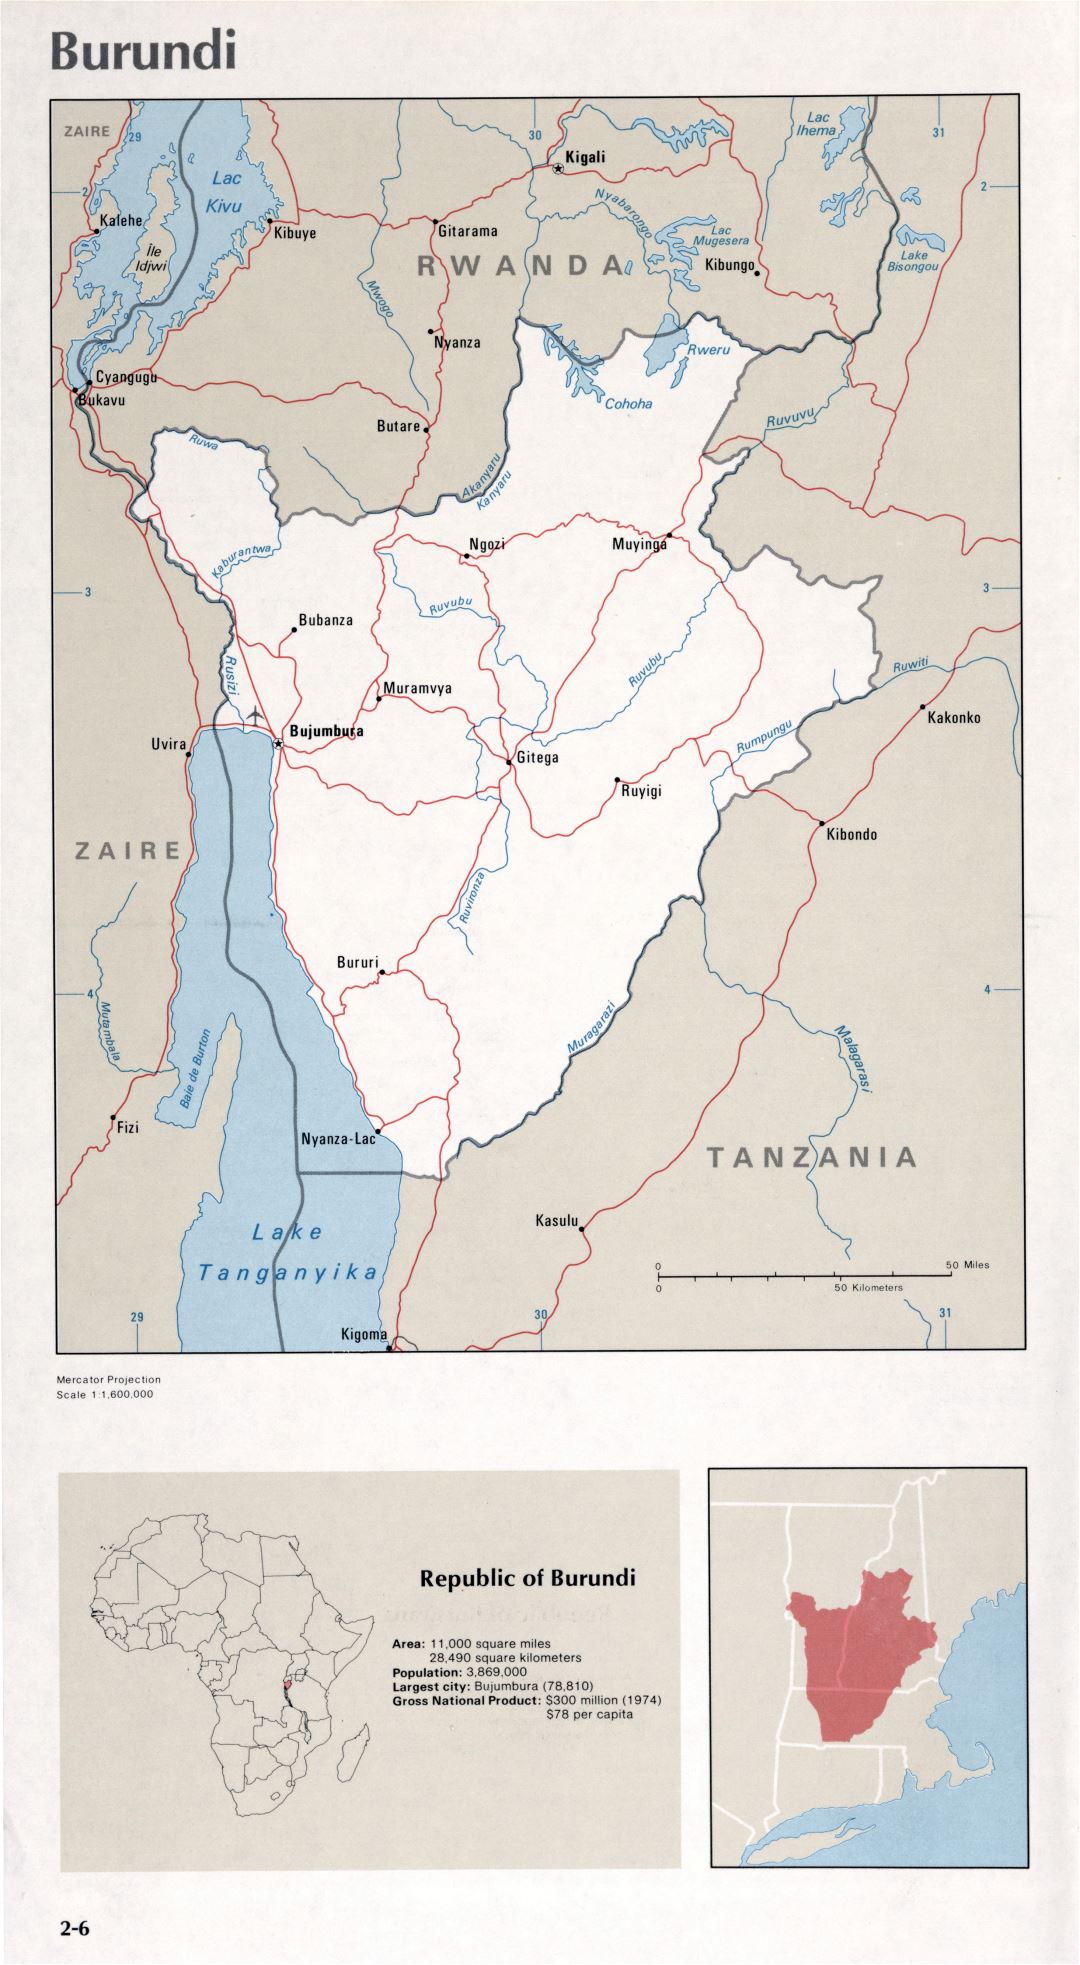 Map of Burundi (2-6)